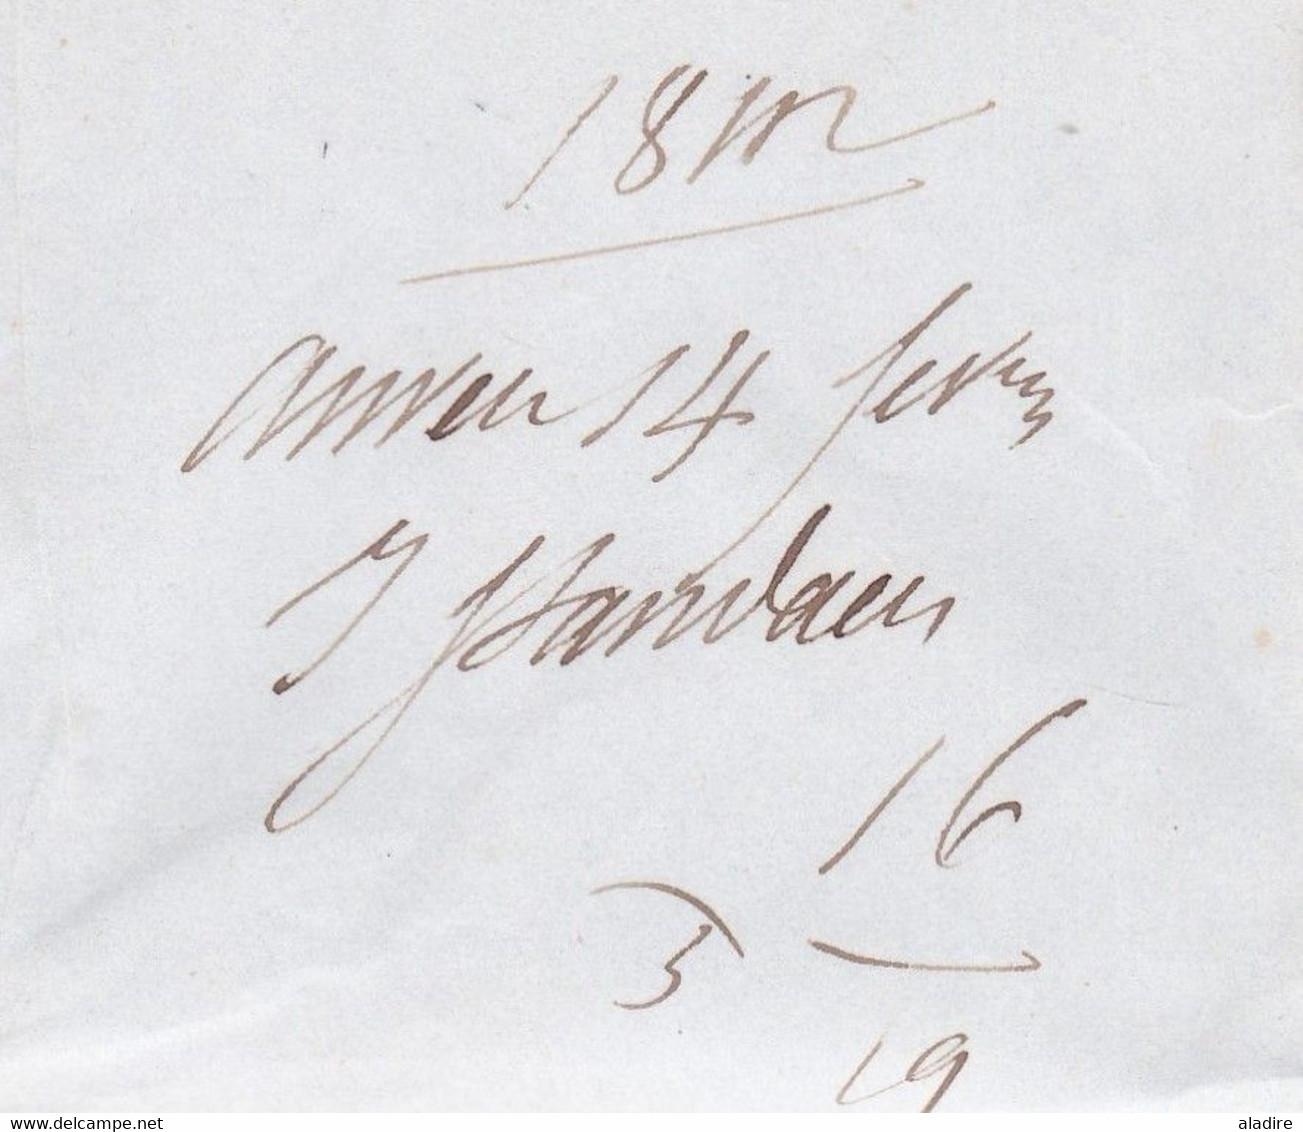 1842 - Lettre pliée avec correspondance d'Anvers Antwerpen vers Paris, France - B4R - taxe 10 - Rotschild